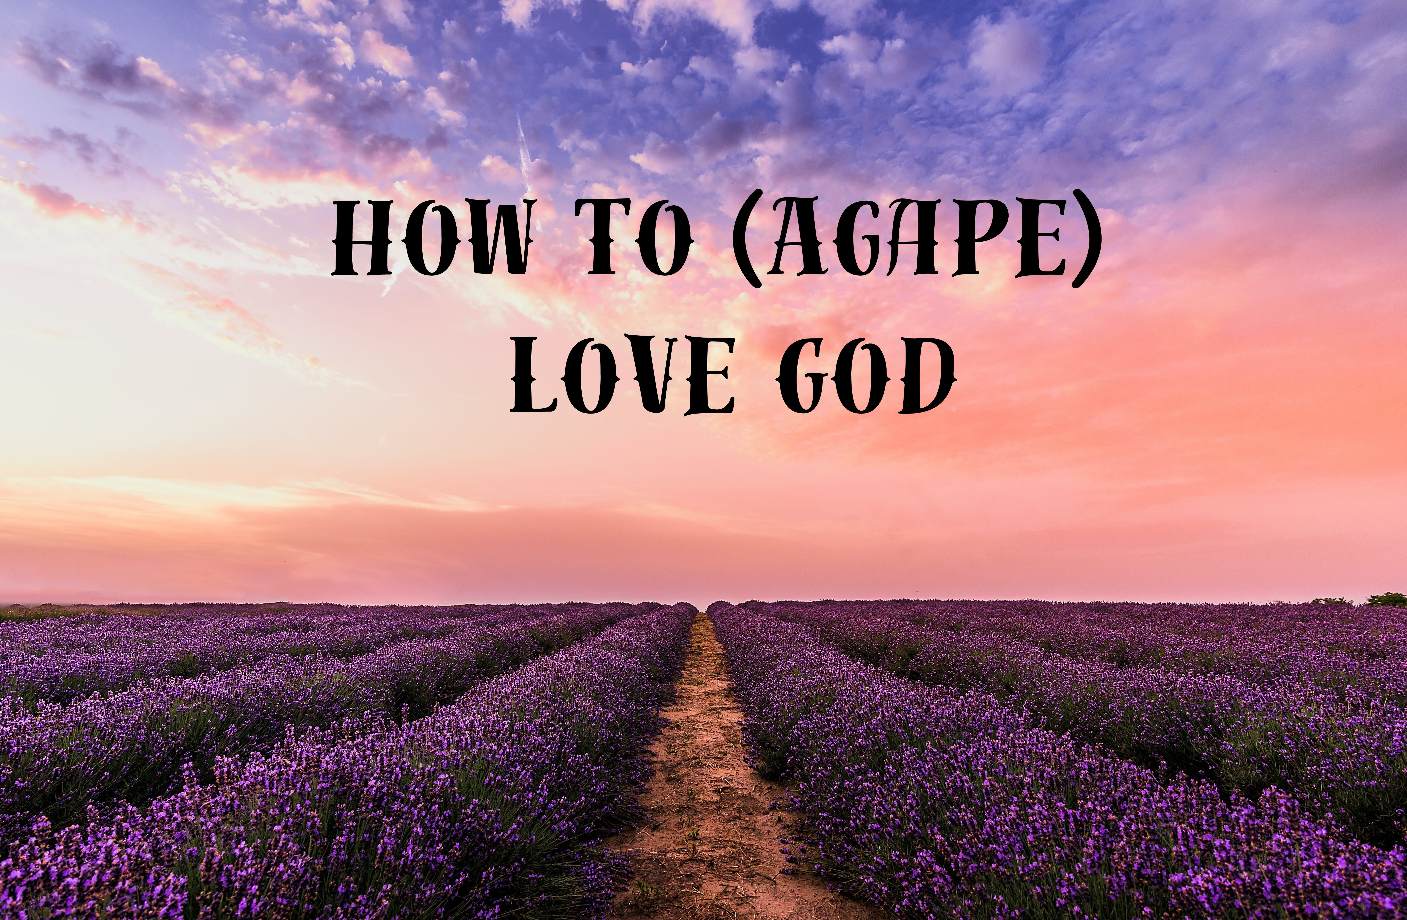 How to (Agape) Love God